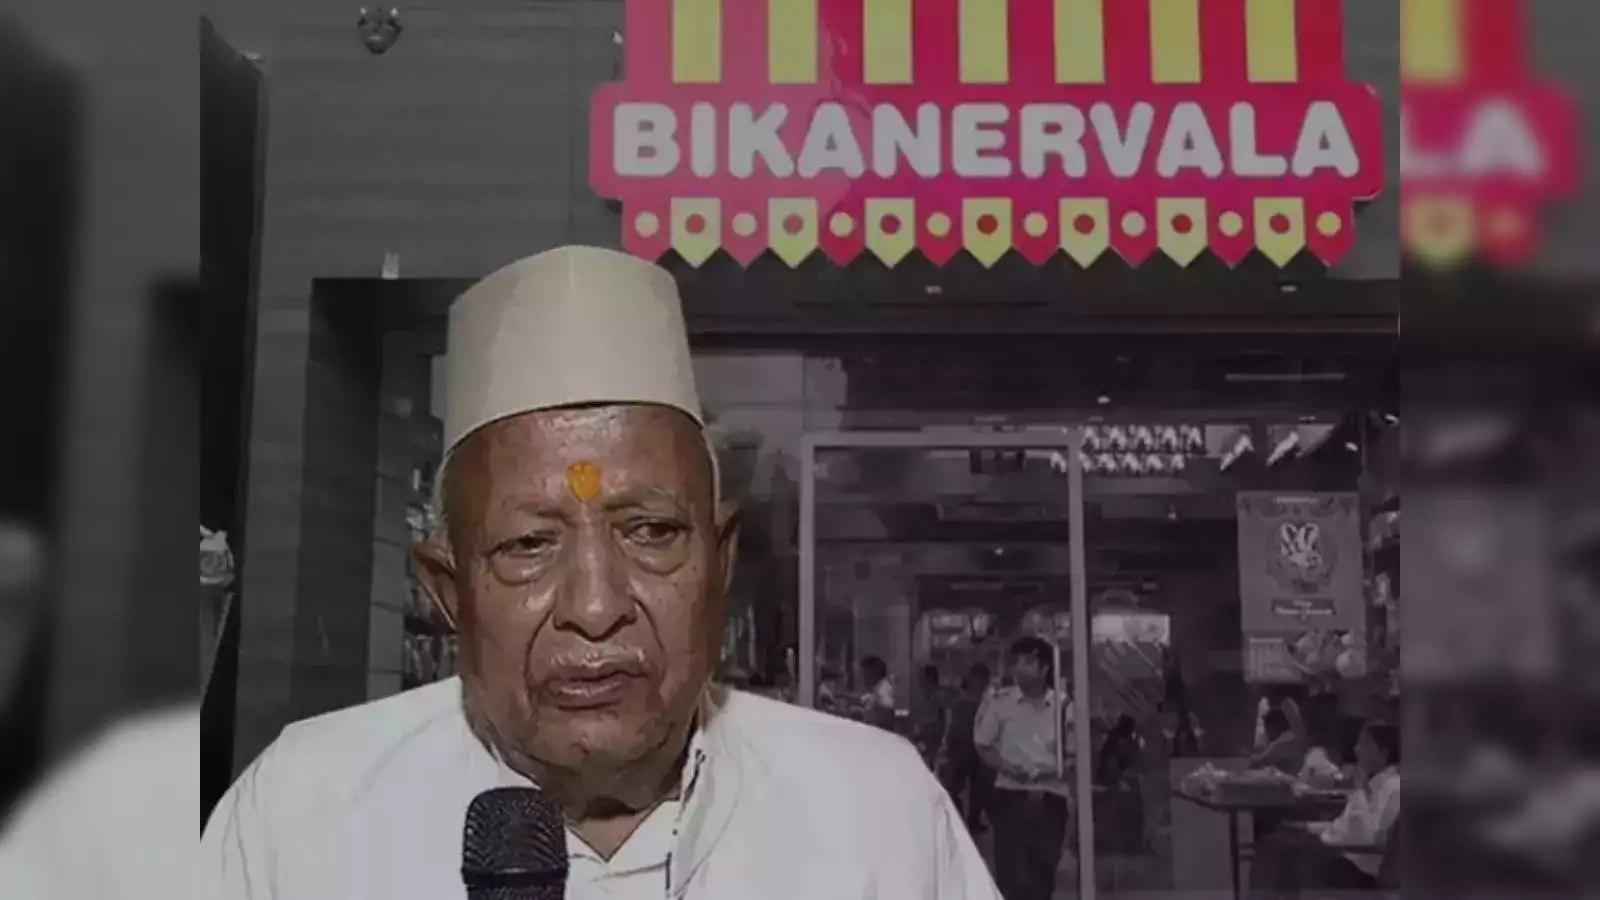 chairman of Bikanervala died